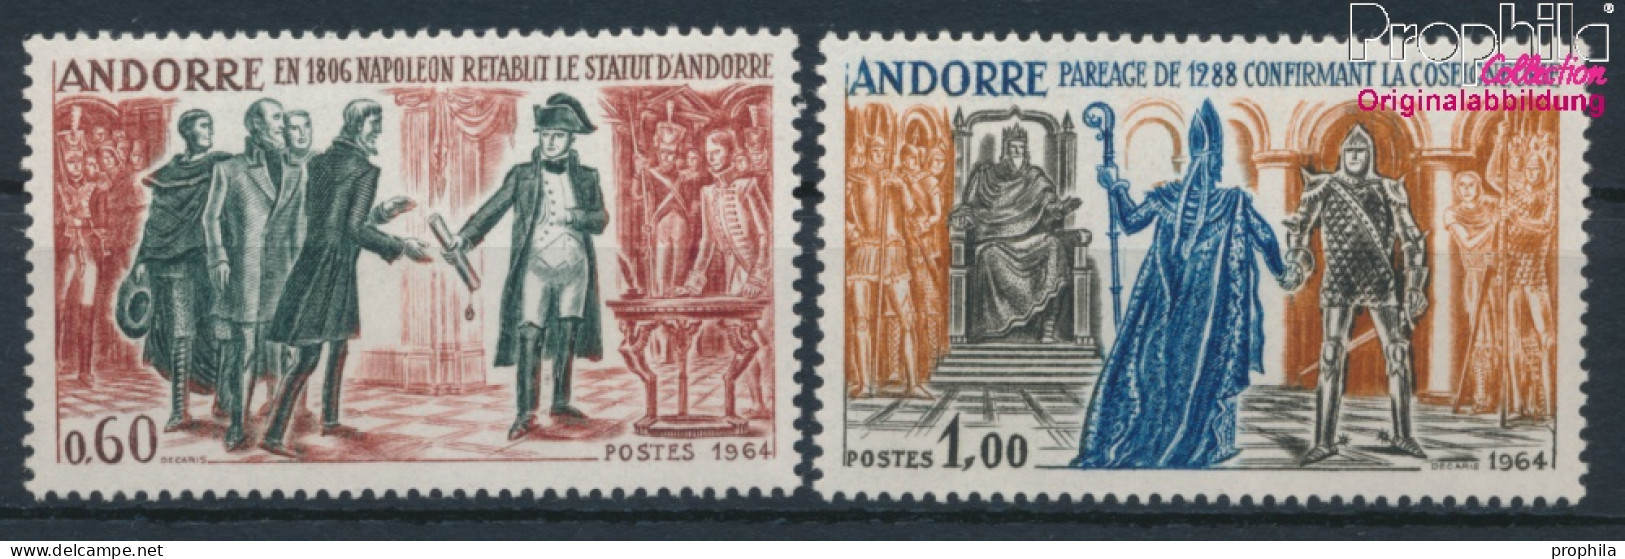 Andorra - Französische Post 183-184 (kompl.Ausg.) Postfrisch 1964 Geschichtsbilder (10368755 - Nuevos